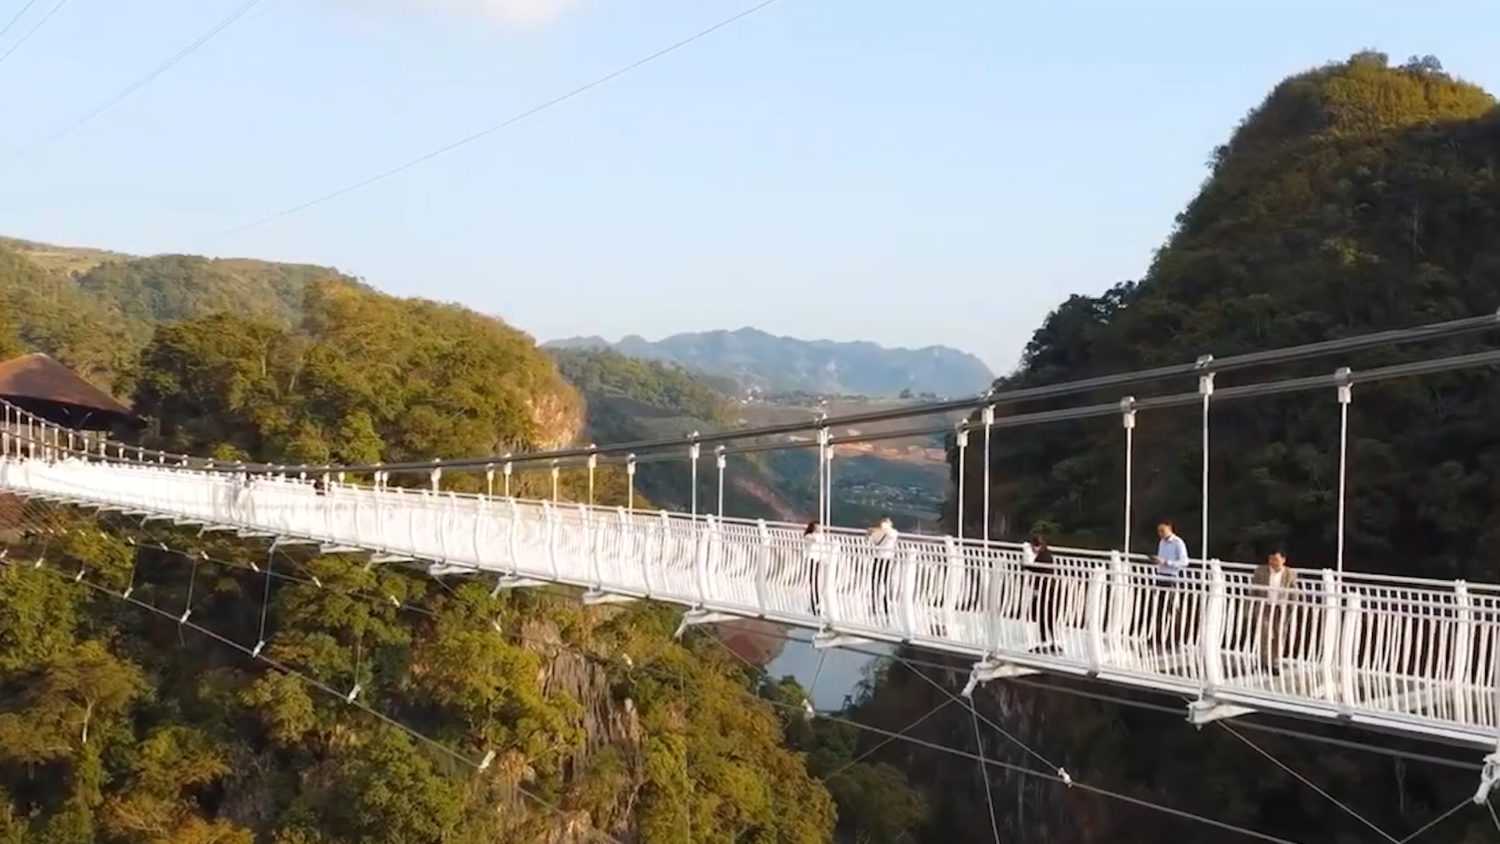 Во вьетнаме открыт самый длинный в мире мост со стеклянным полом